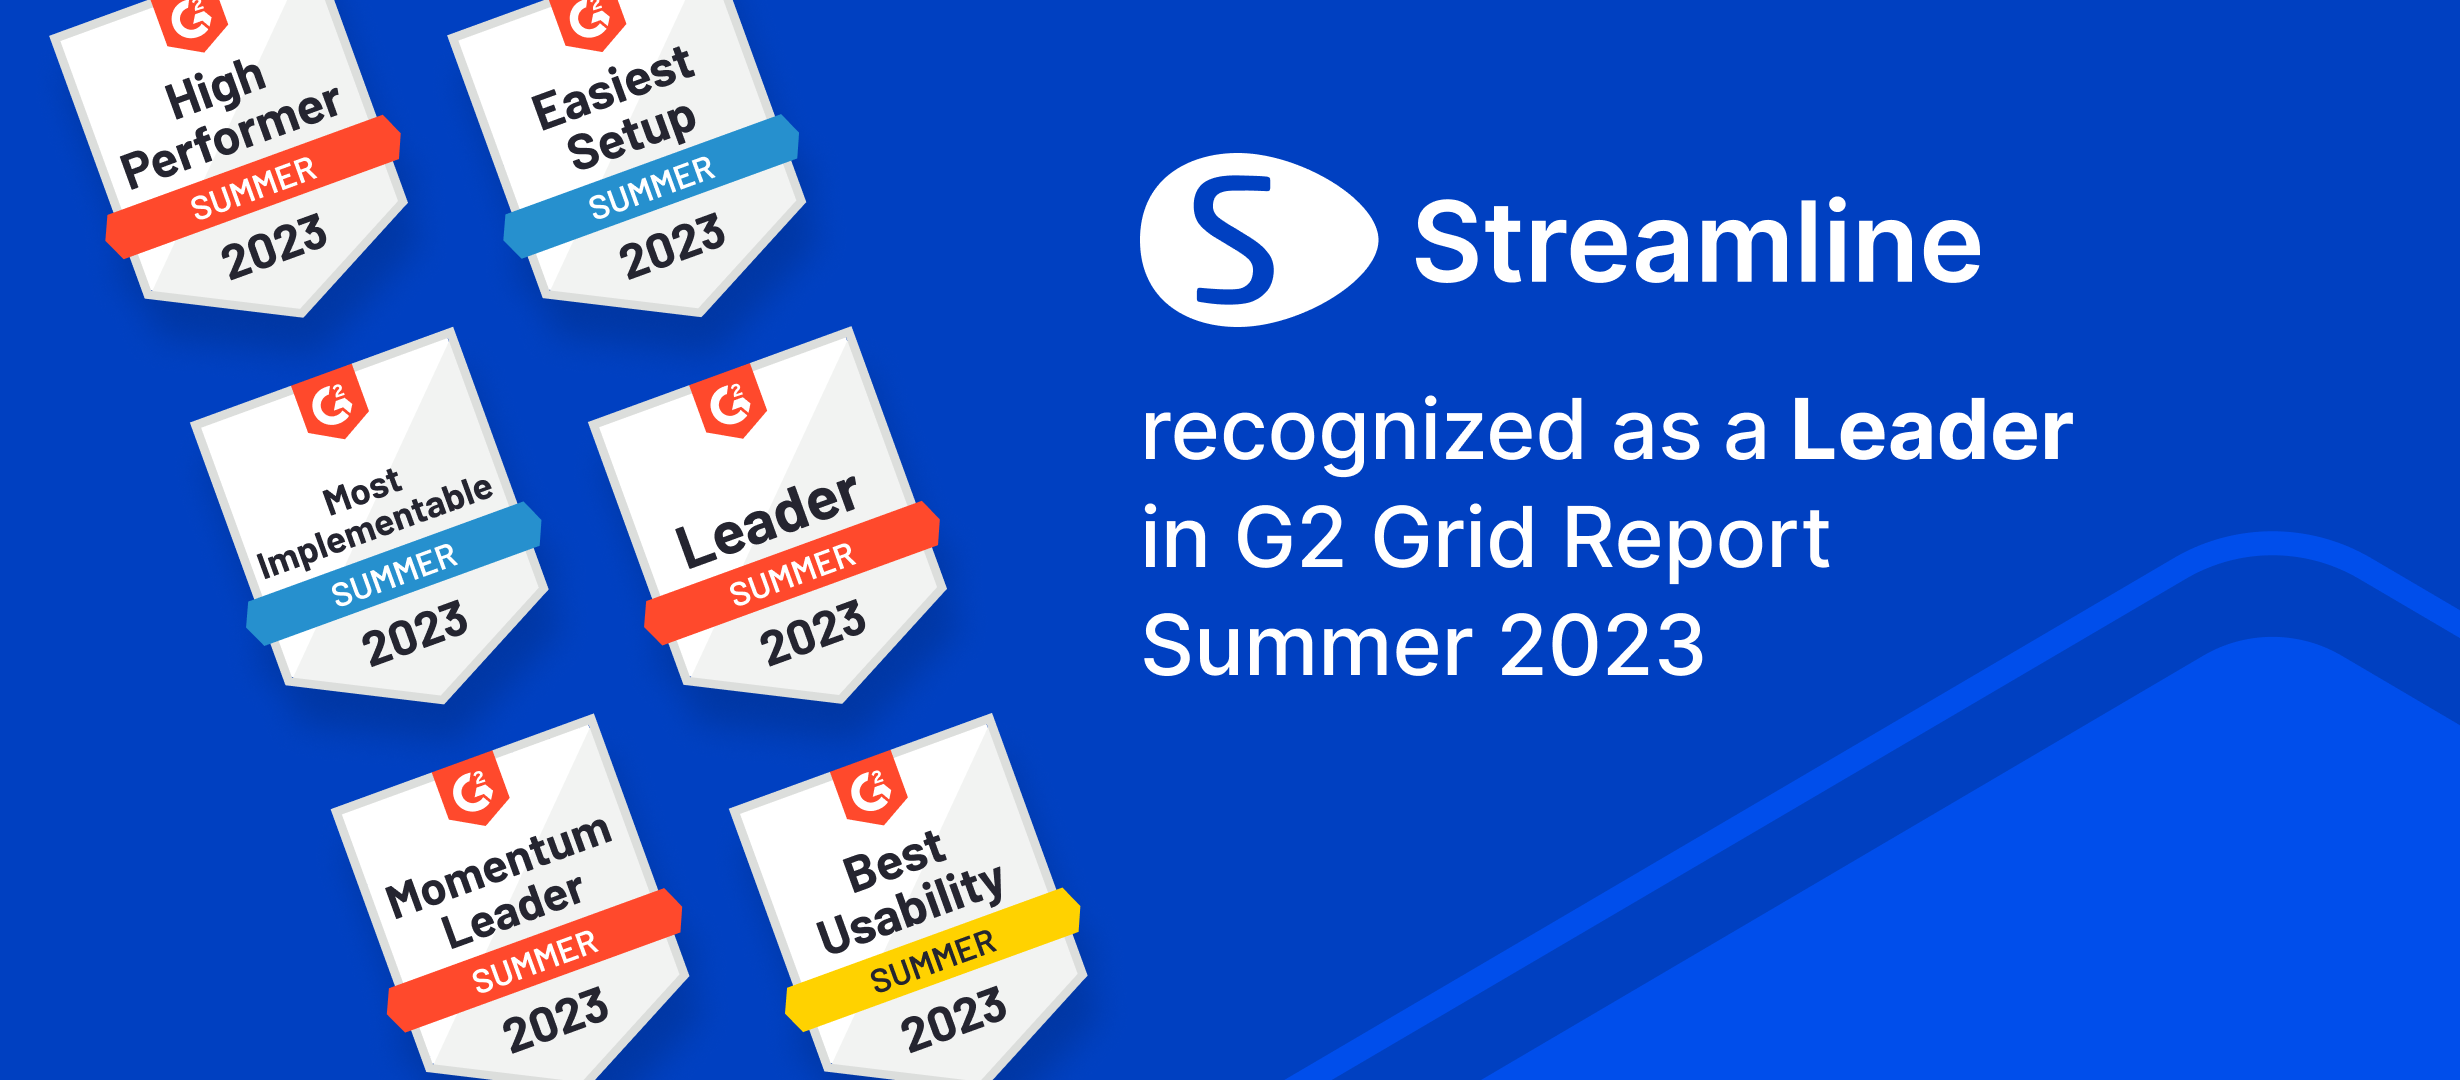 GMDH Streamline названо лідером у кількох категоріях у звітах G2 Summer'23 | GMDH